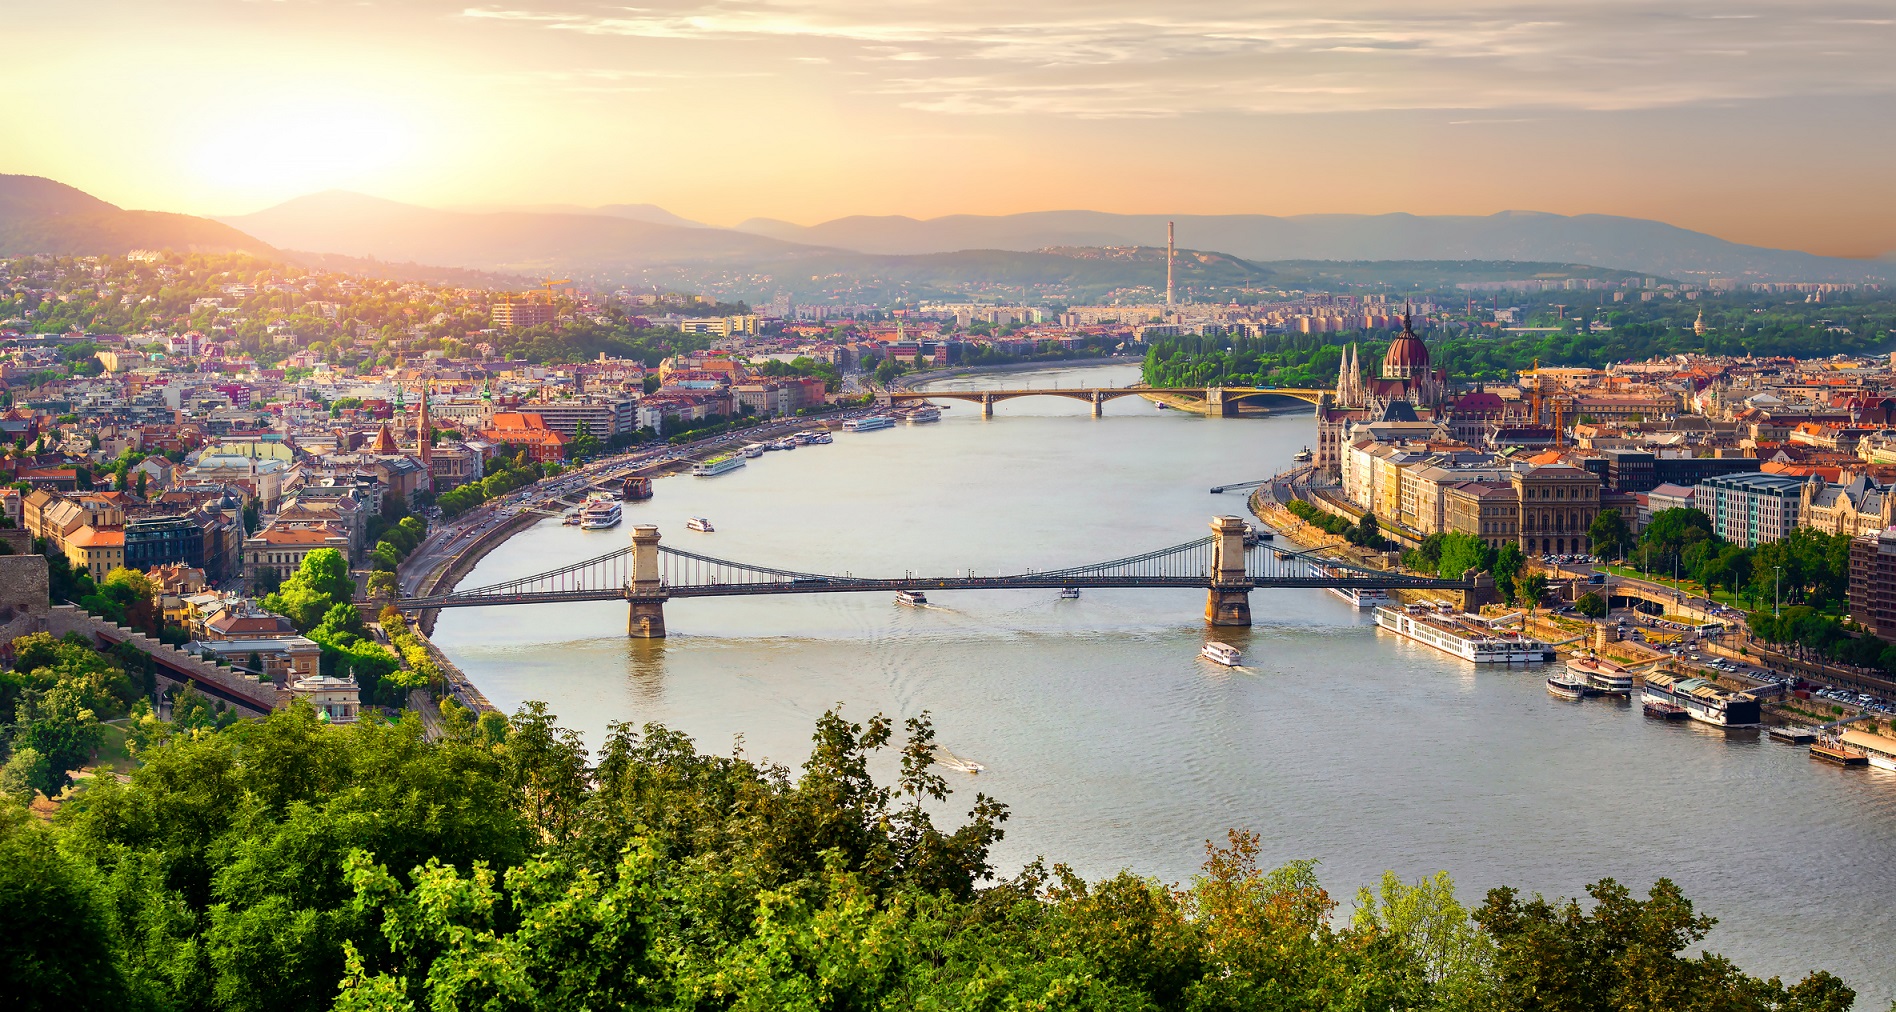 Zöldebb, kékebb, élhetőbb és fenntarthatóbb Budapestet hozhat a Radó Dezső terv